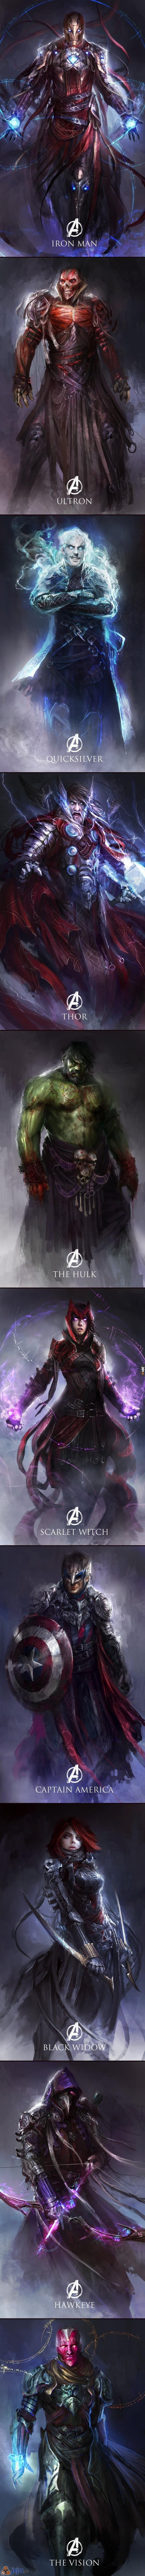 Gdyby postacie z Avengers istniały w Diablo